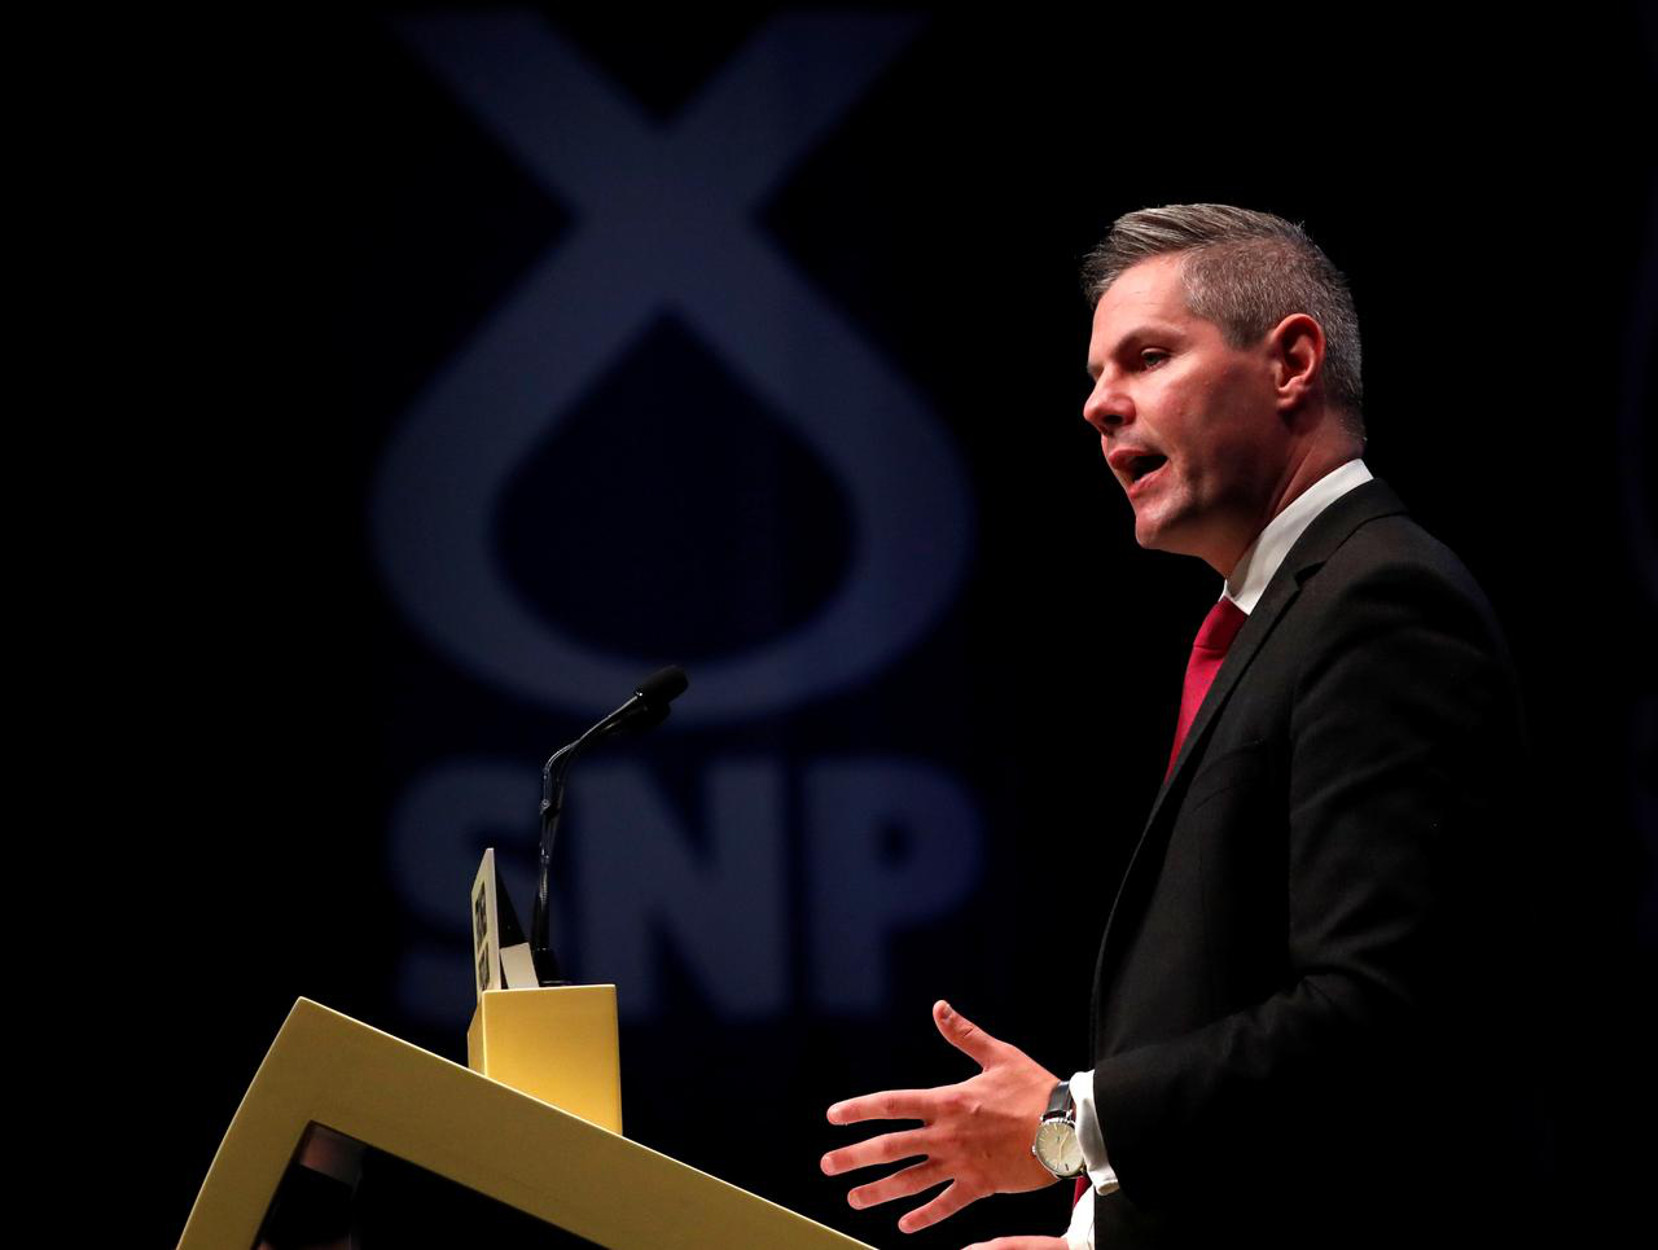 Σκωτία: Παραιτήθηκε ο υπουργός Οικονομικών! Είχε στείλει εκατοντάδες μηνύματα σε 16χρονο αγόρι